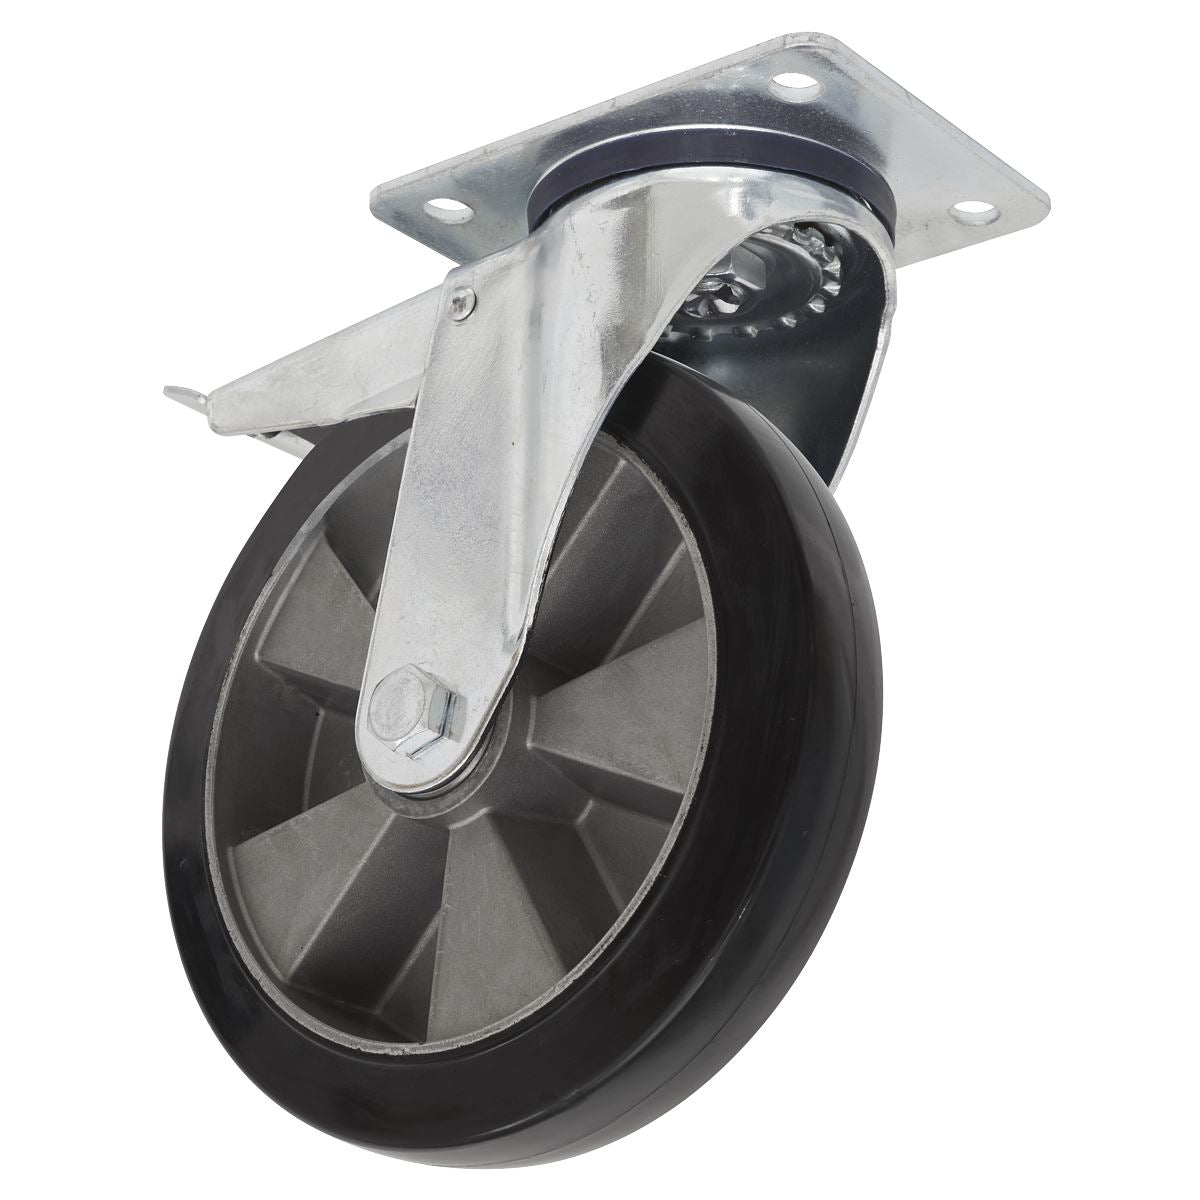 Sealey Heavy-Duty Rubber Castor Wheel Swivel With Total Lock Ø125mm - Trade